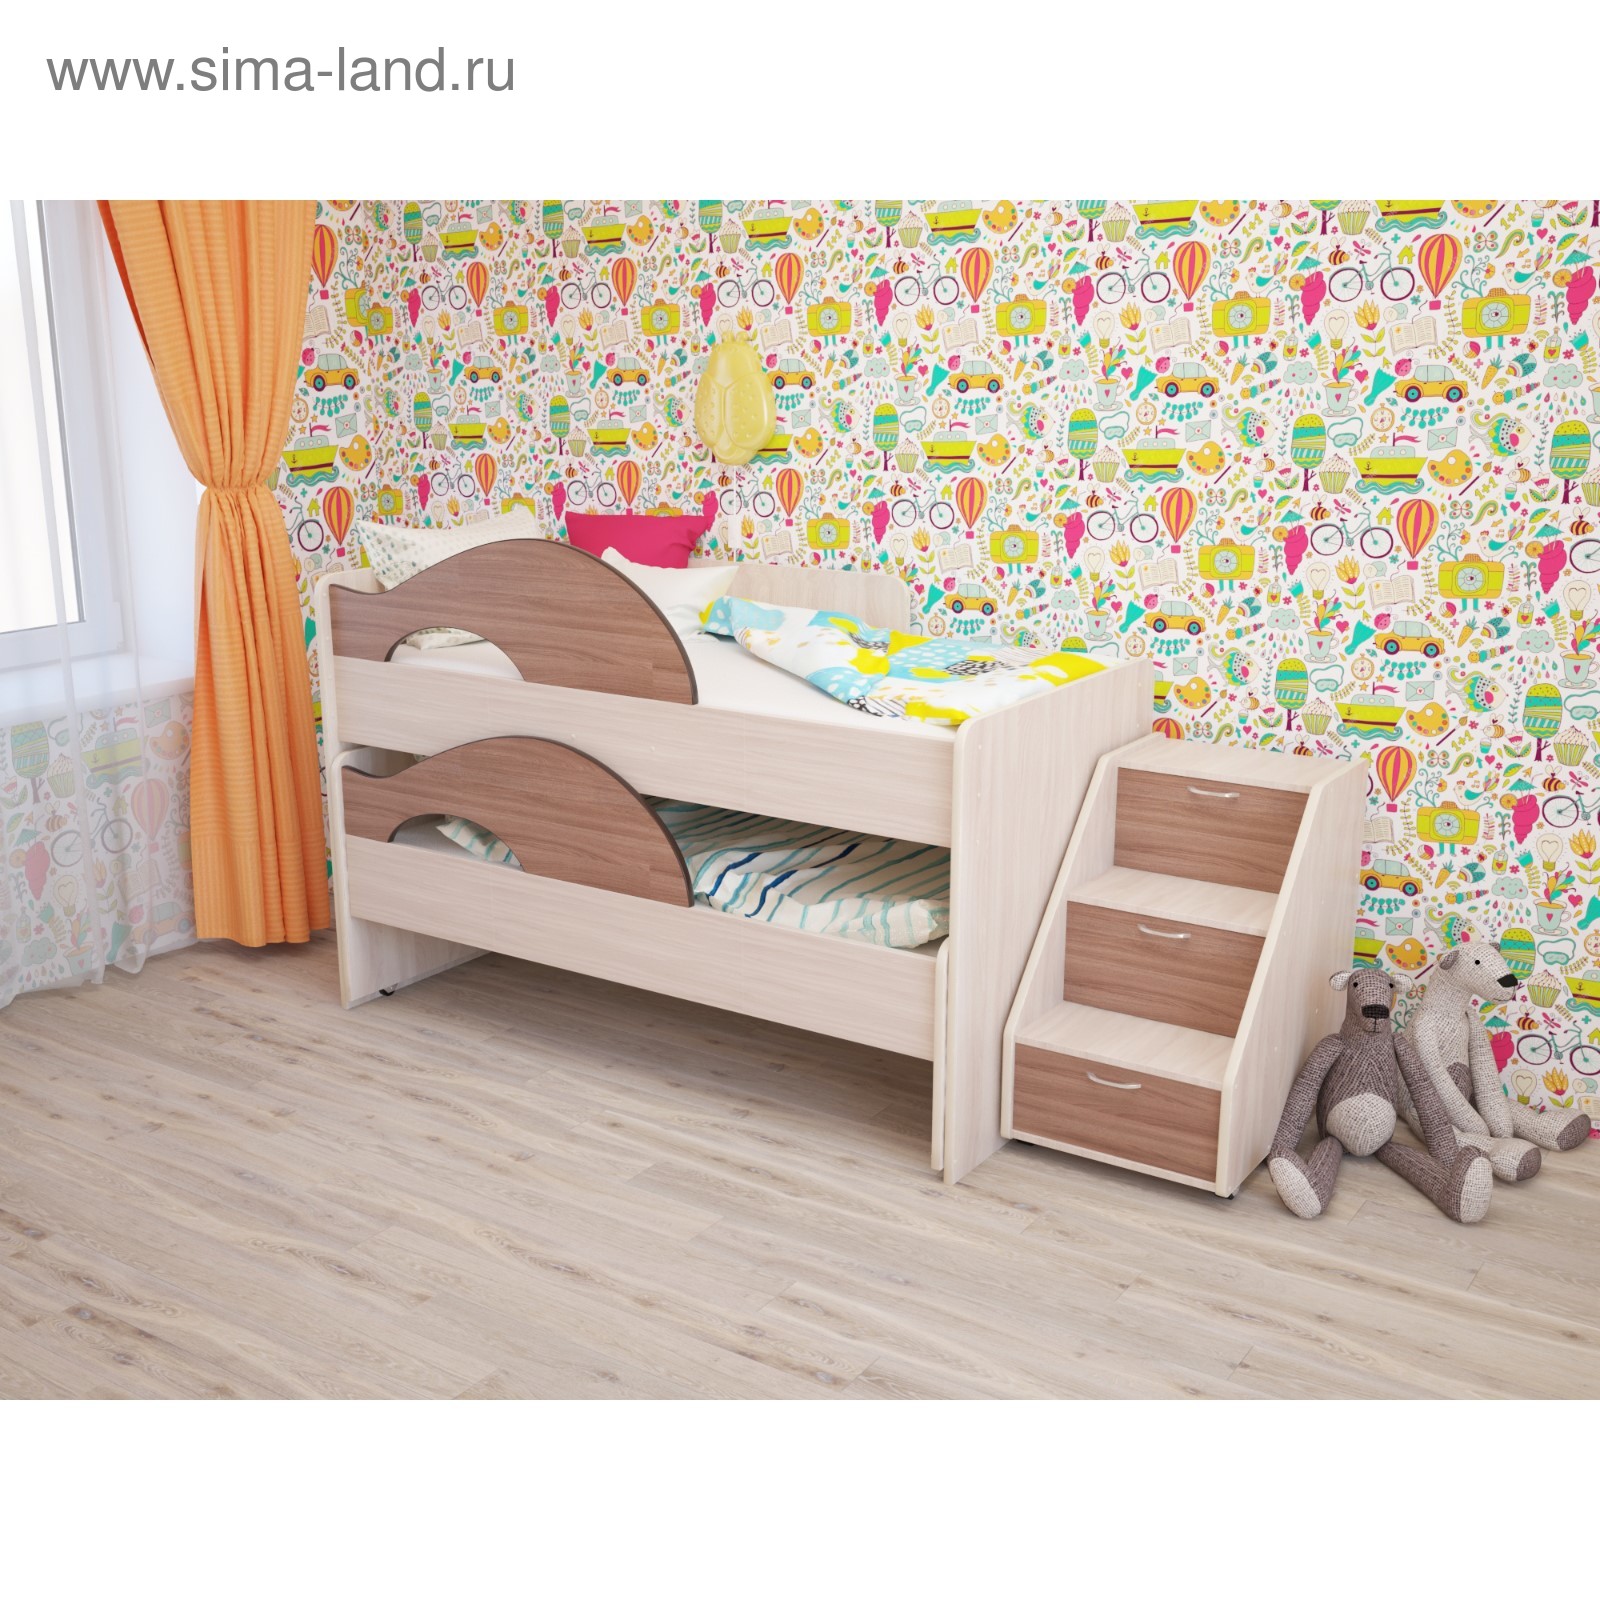 Встроенные кровати для двоих детей